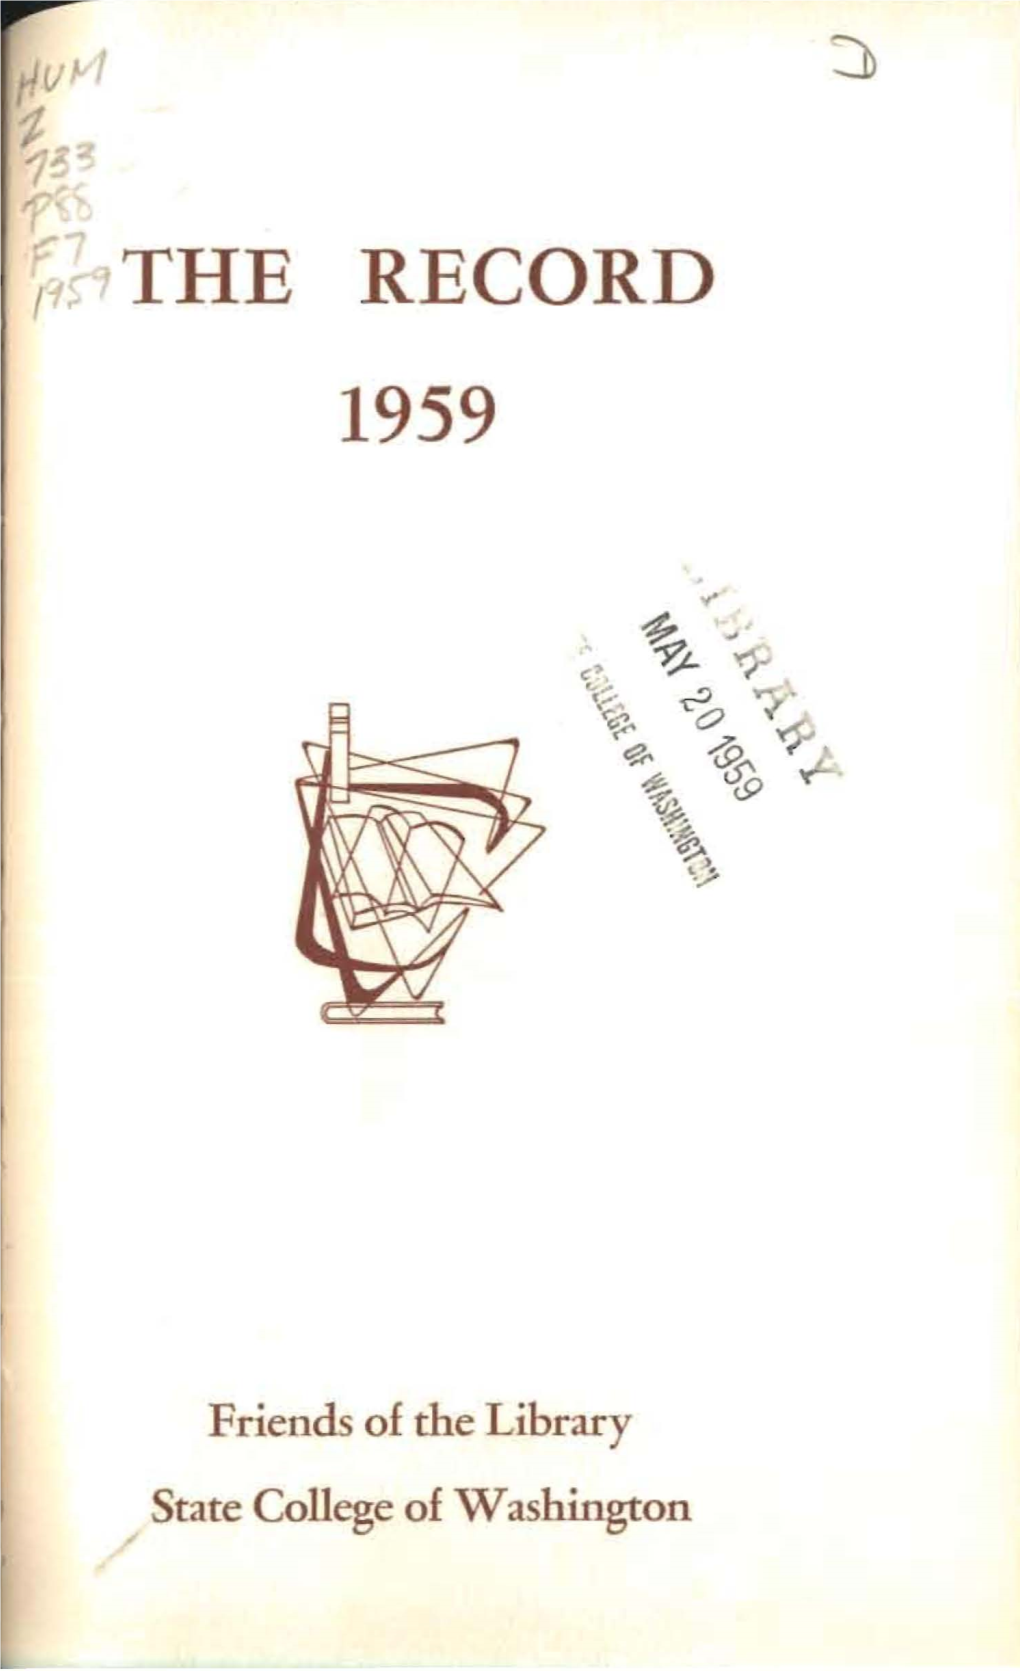 TR 1959.Pdf (12.19Mb)